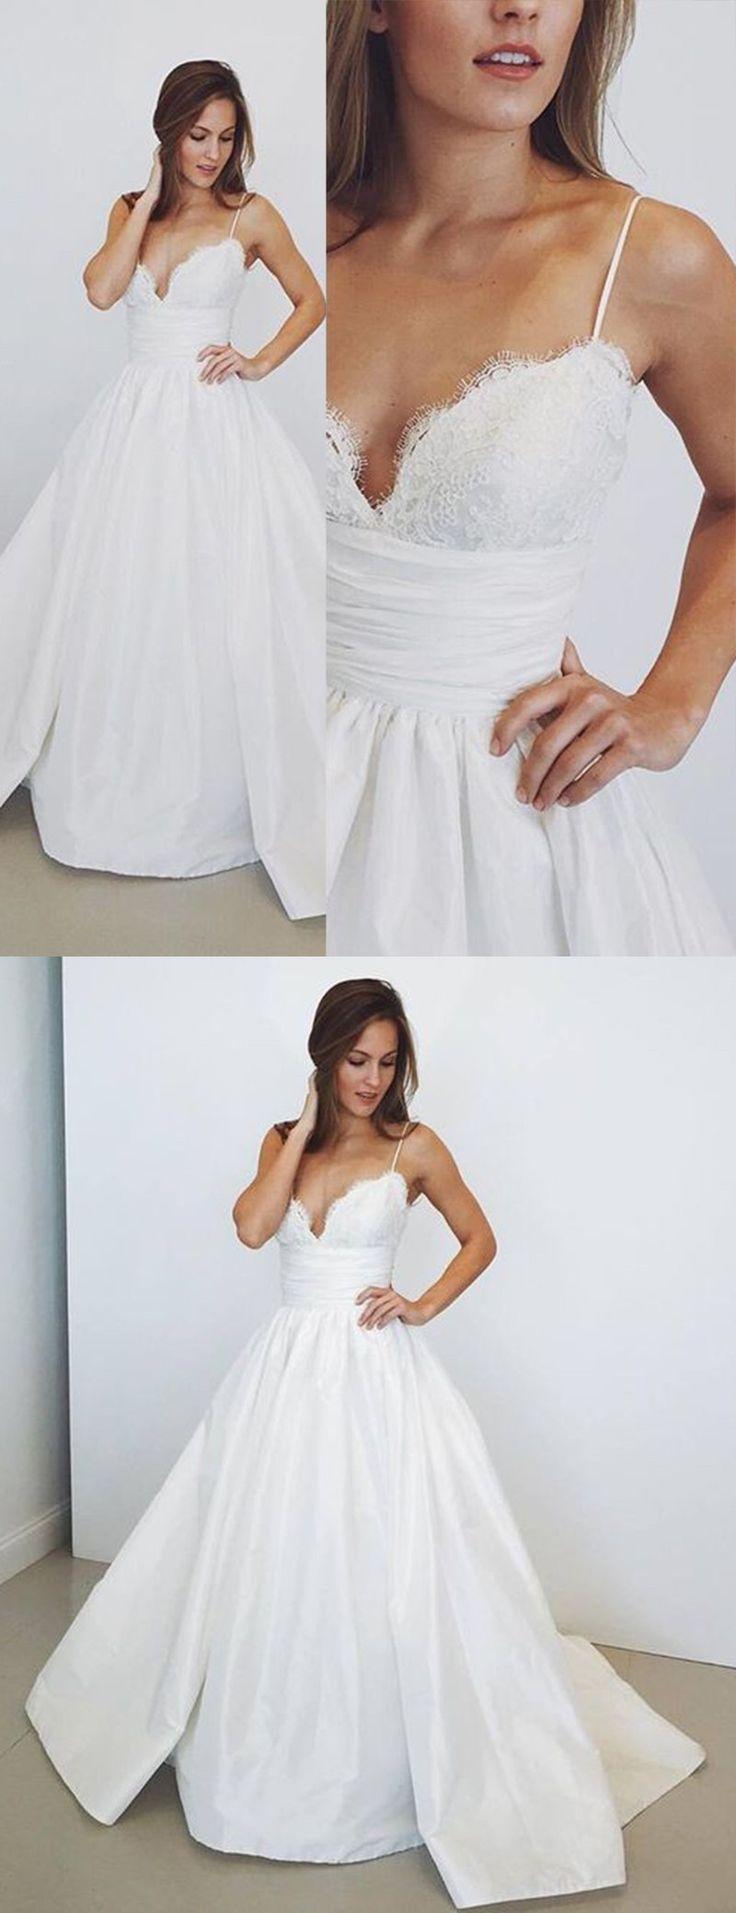 زفاف - Stunning Spagnetti Straps A-line Long Wedding Dress With Lace Top